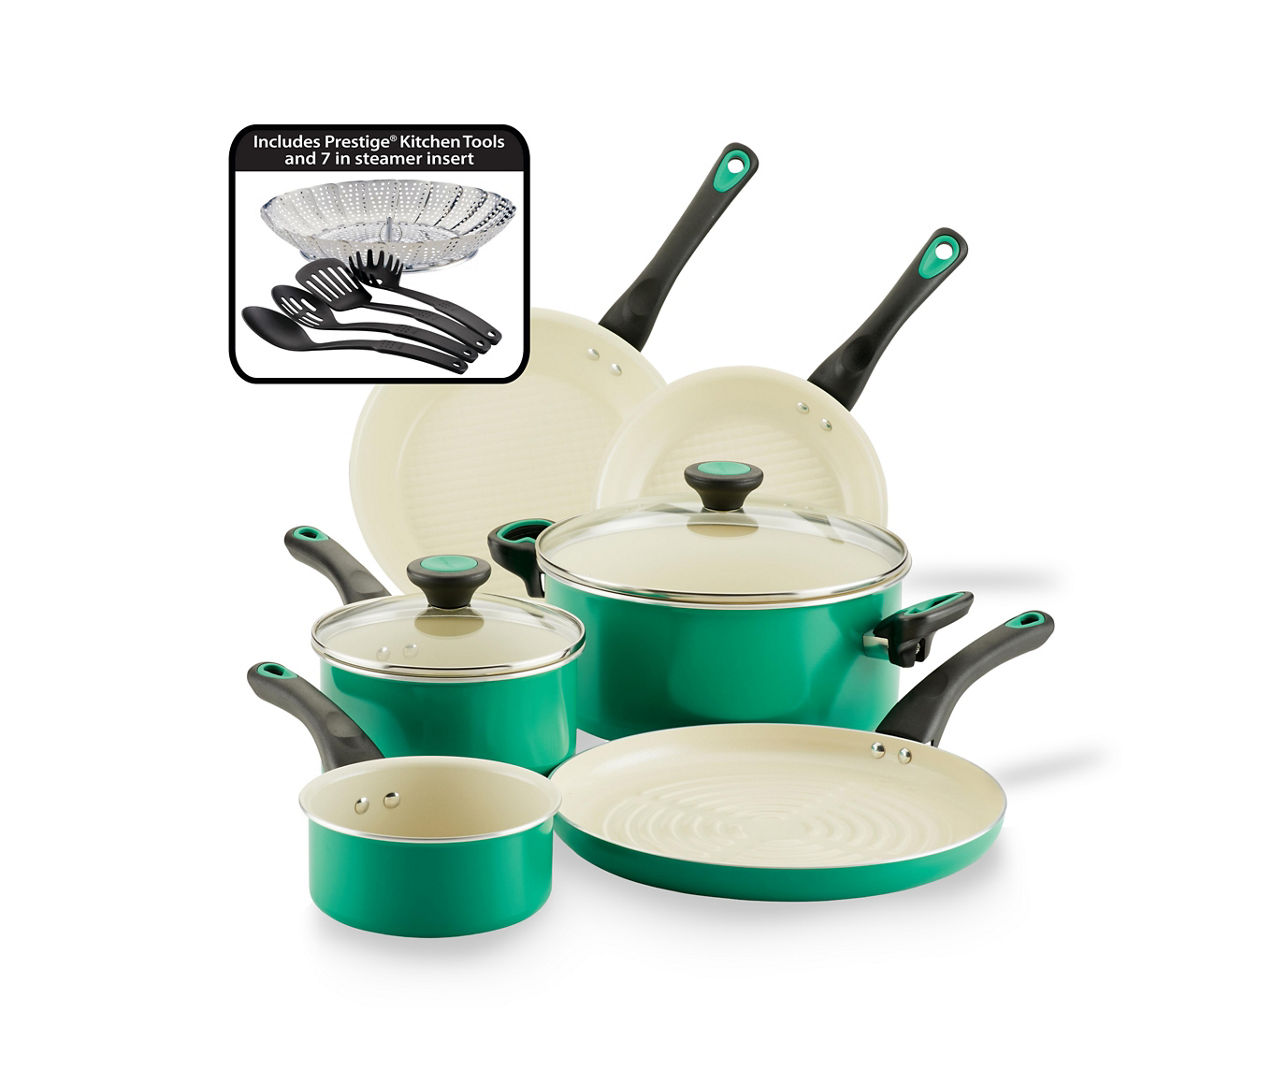 Farberware Go Healthy! 13-Piece Ceramic Non-Stick Cookware Set